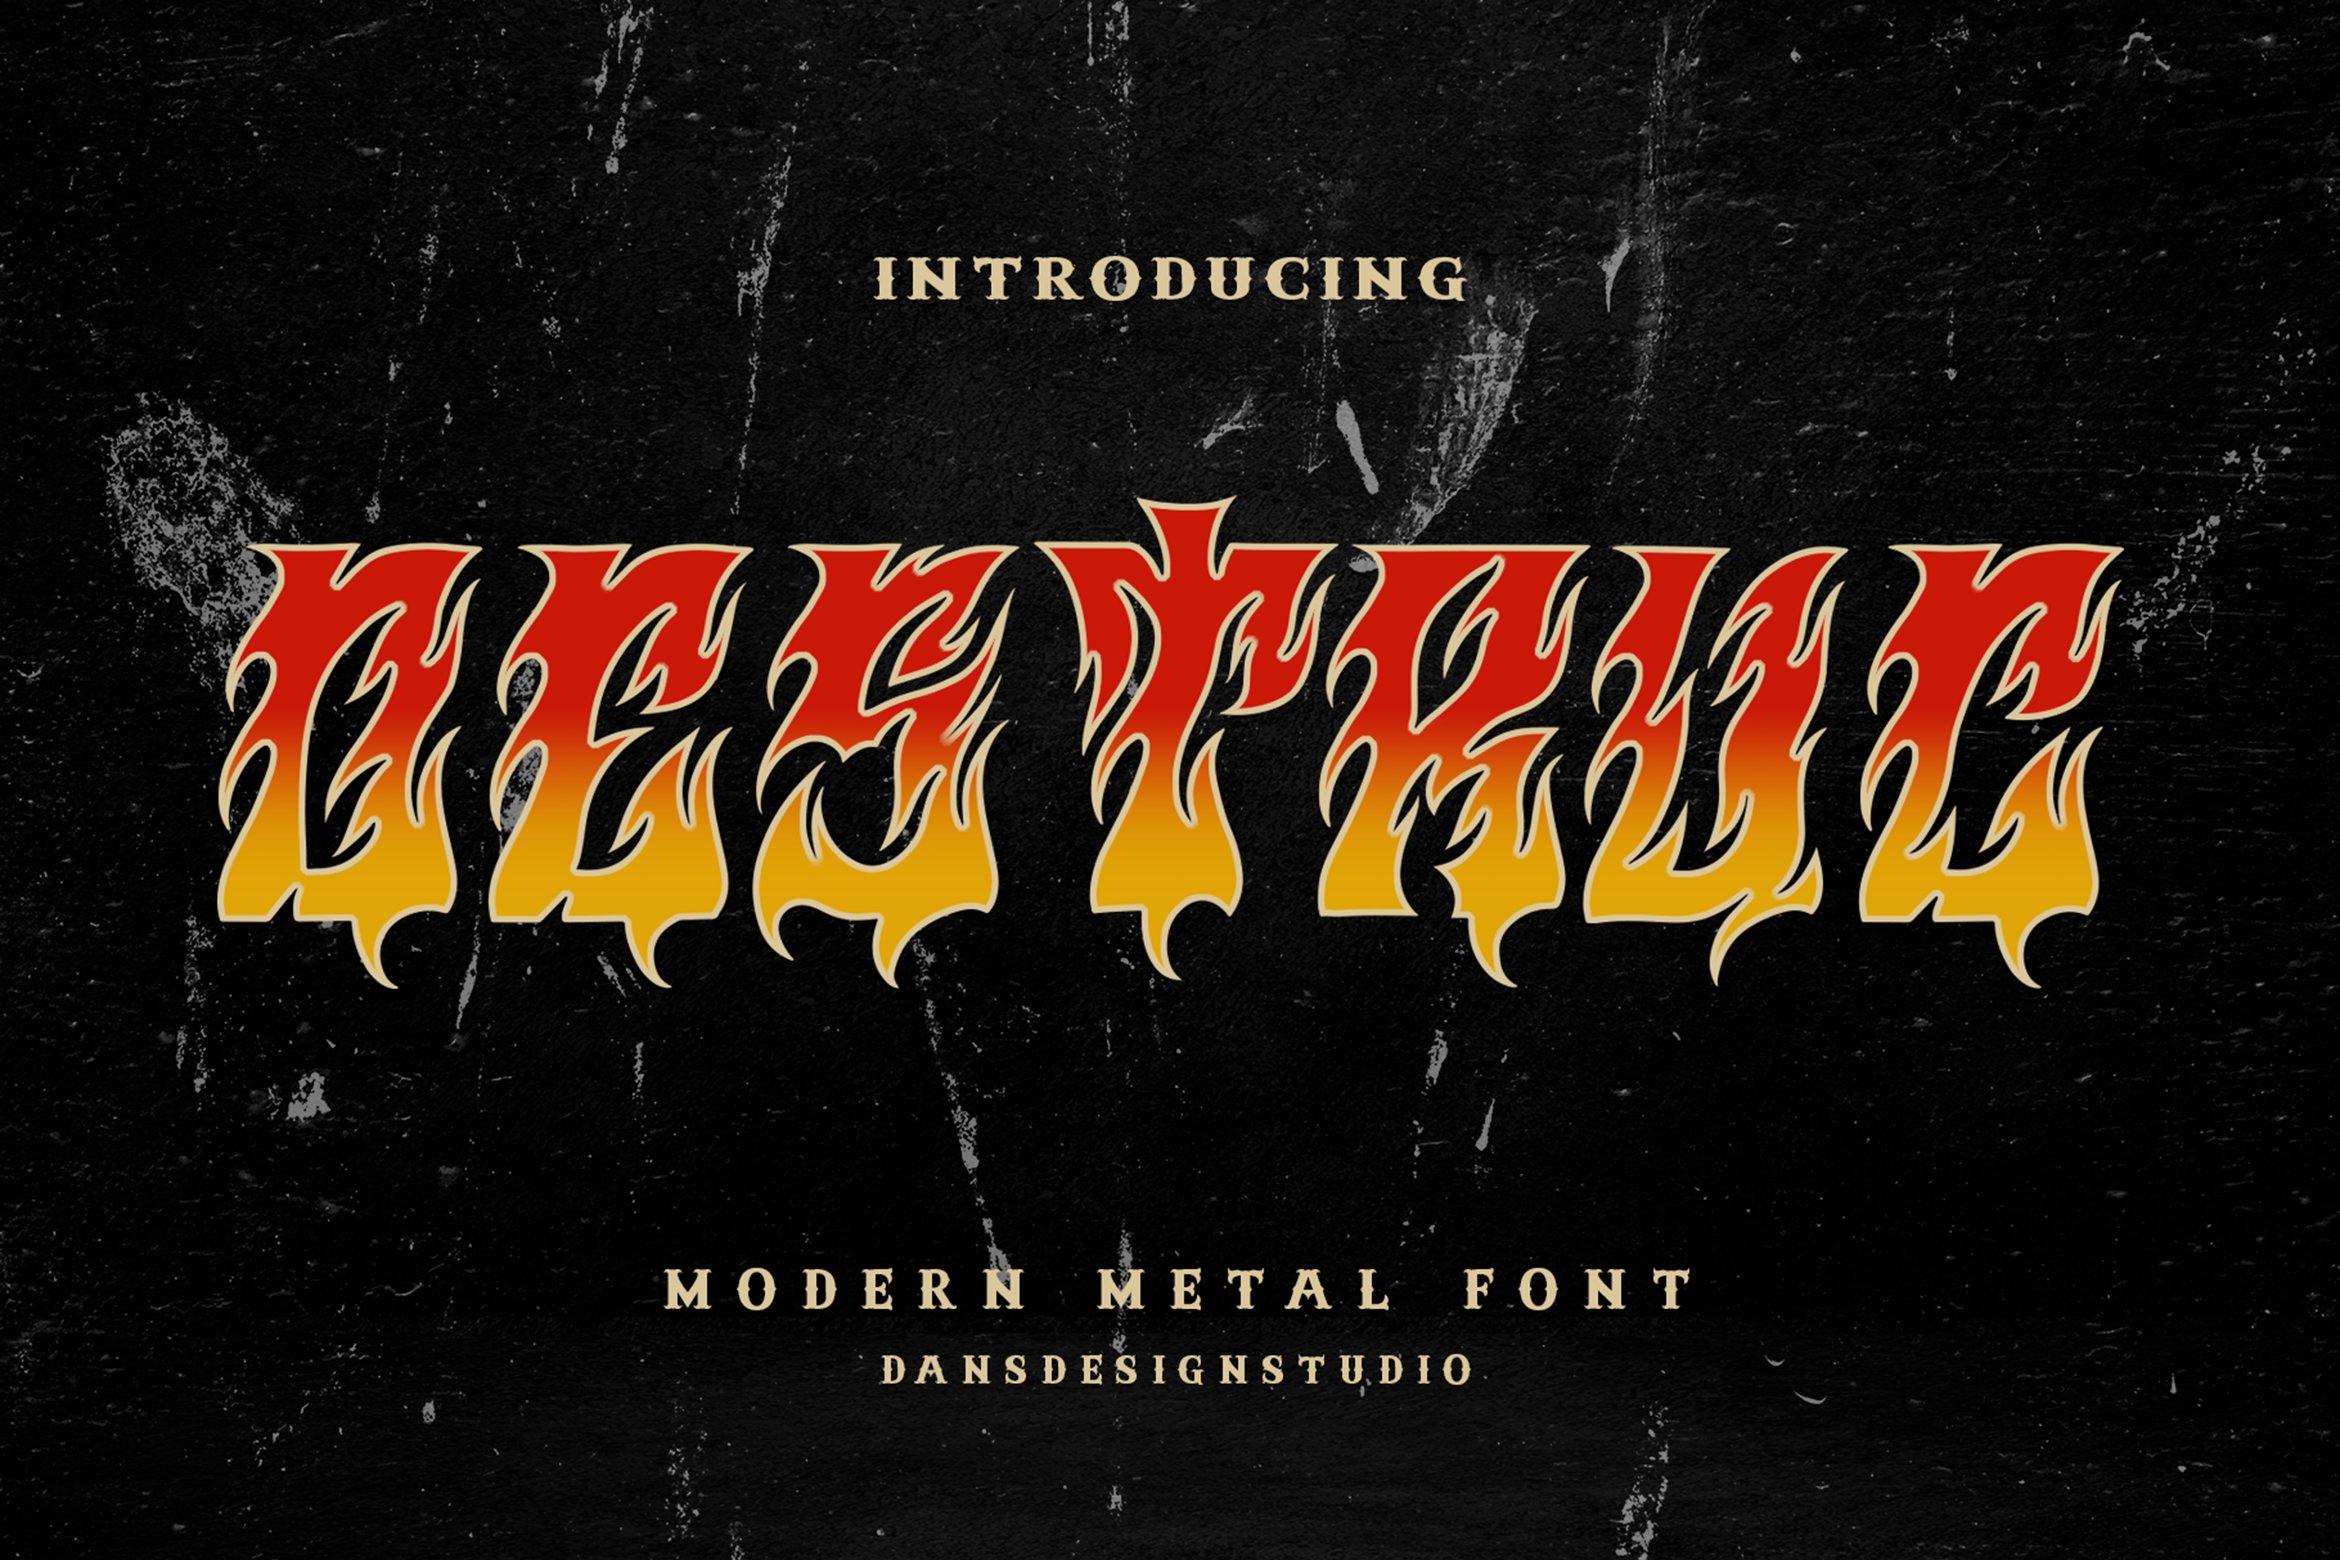 Destruc Modern Metal Font cover image.